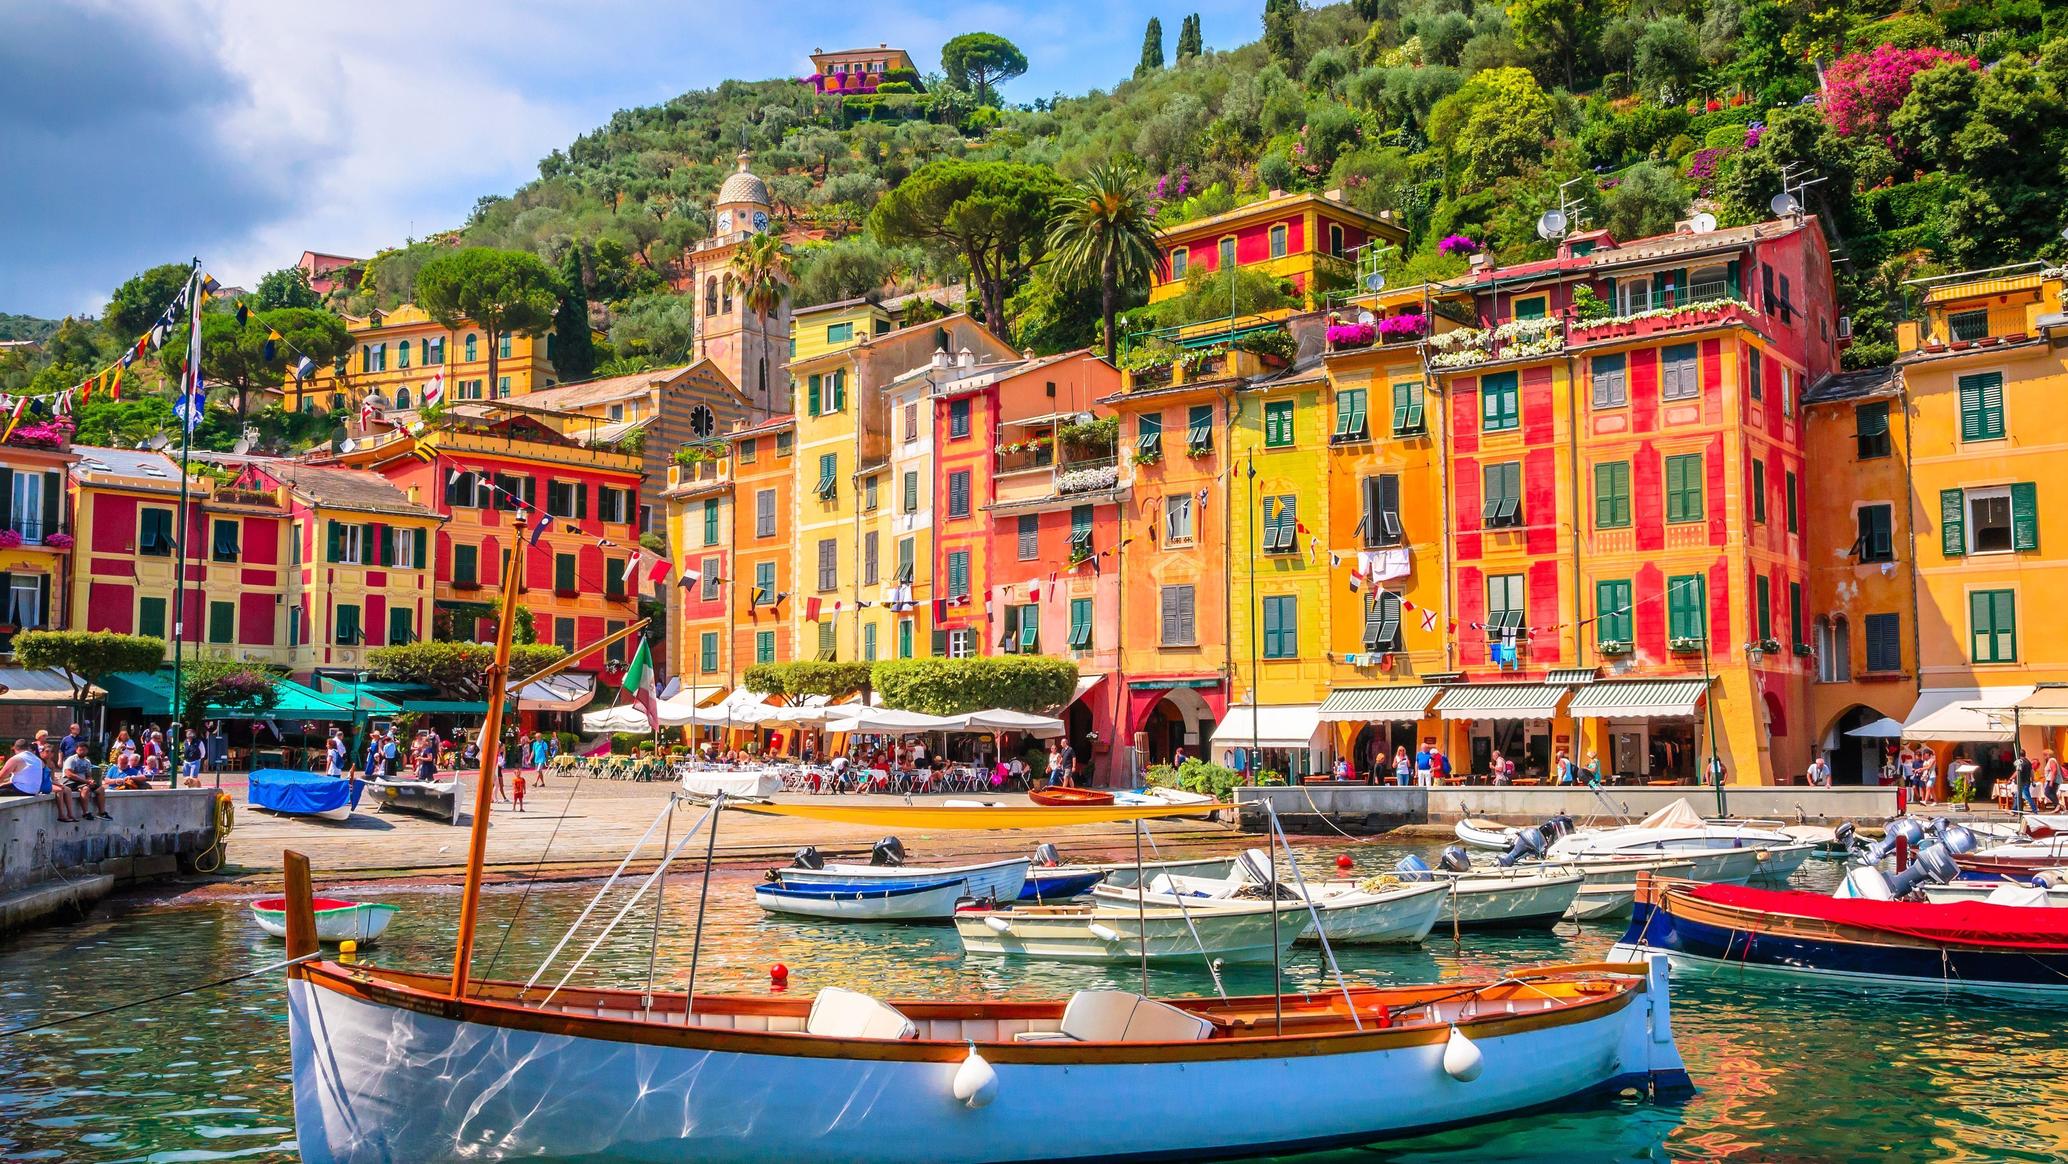 Vacanta in Genova si Portofino – 186 euro (zbor si cazare 4 nopti)